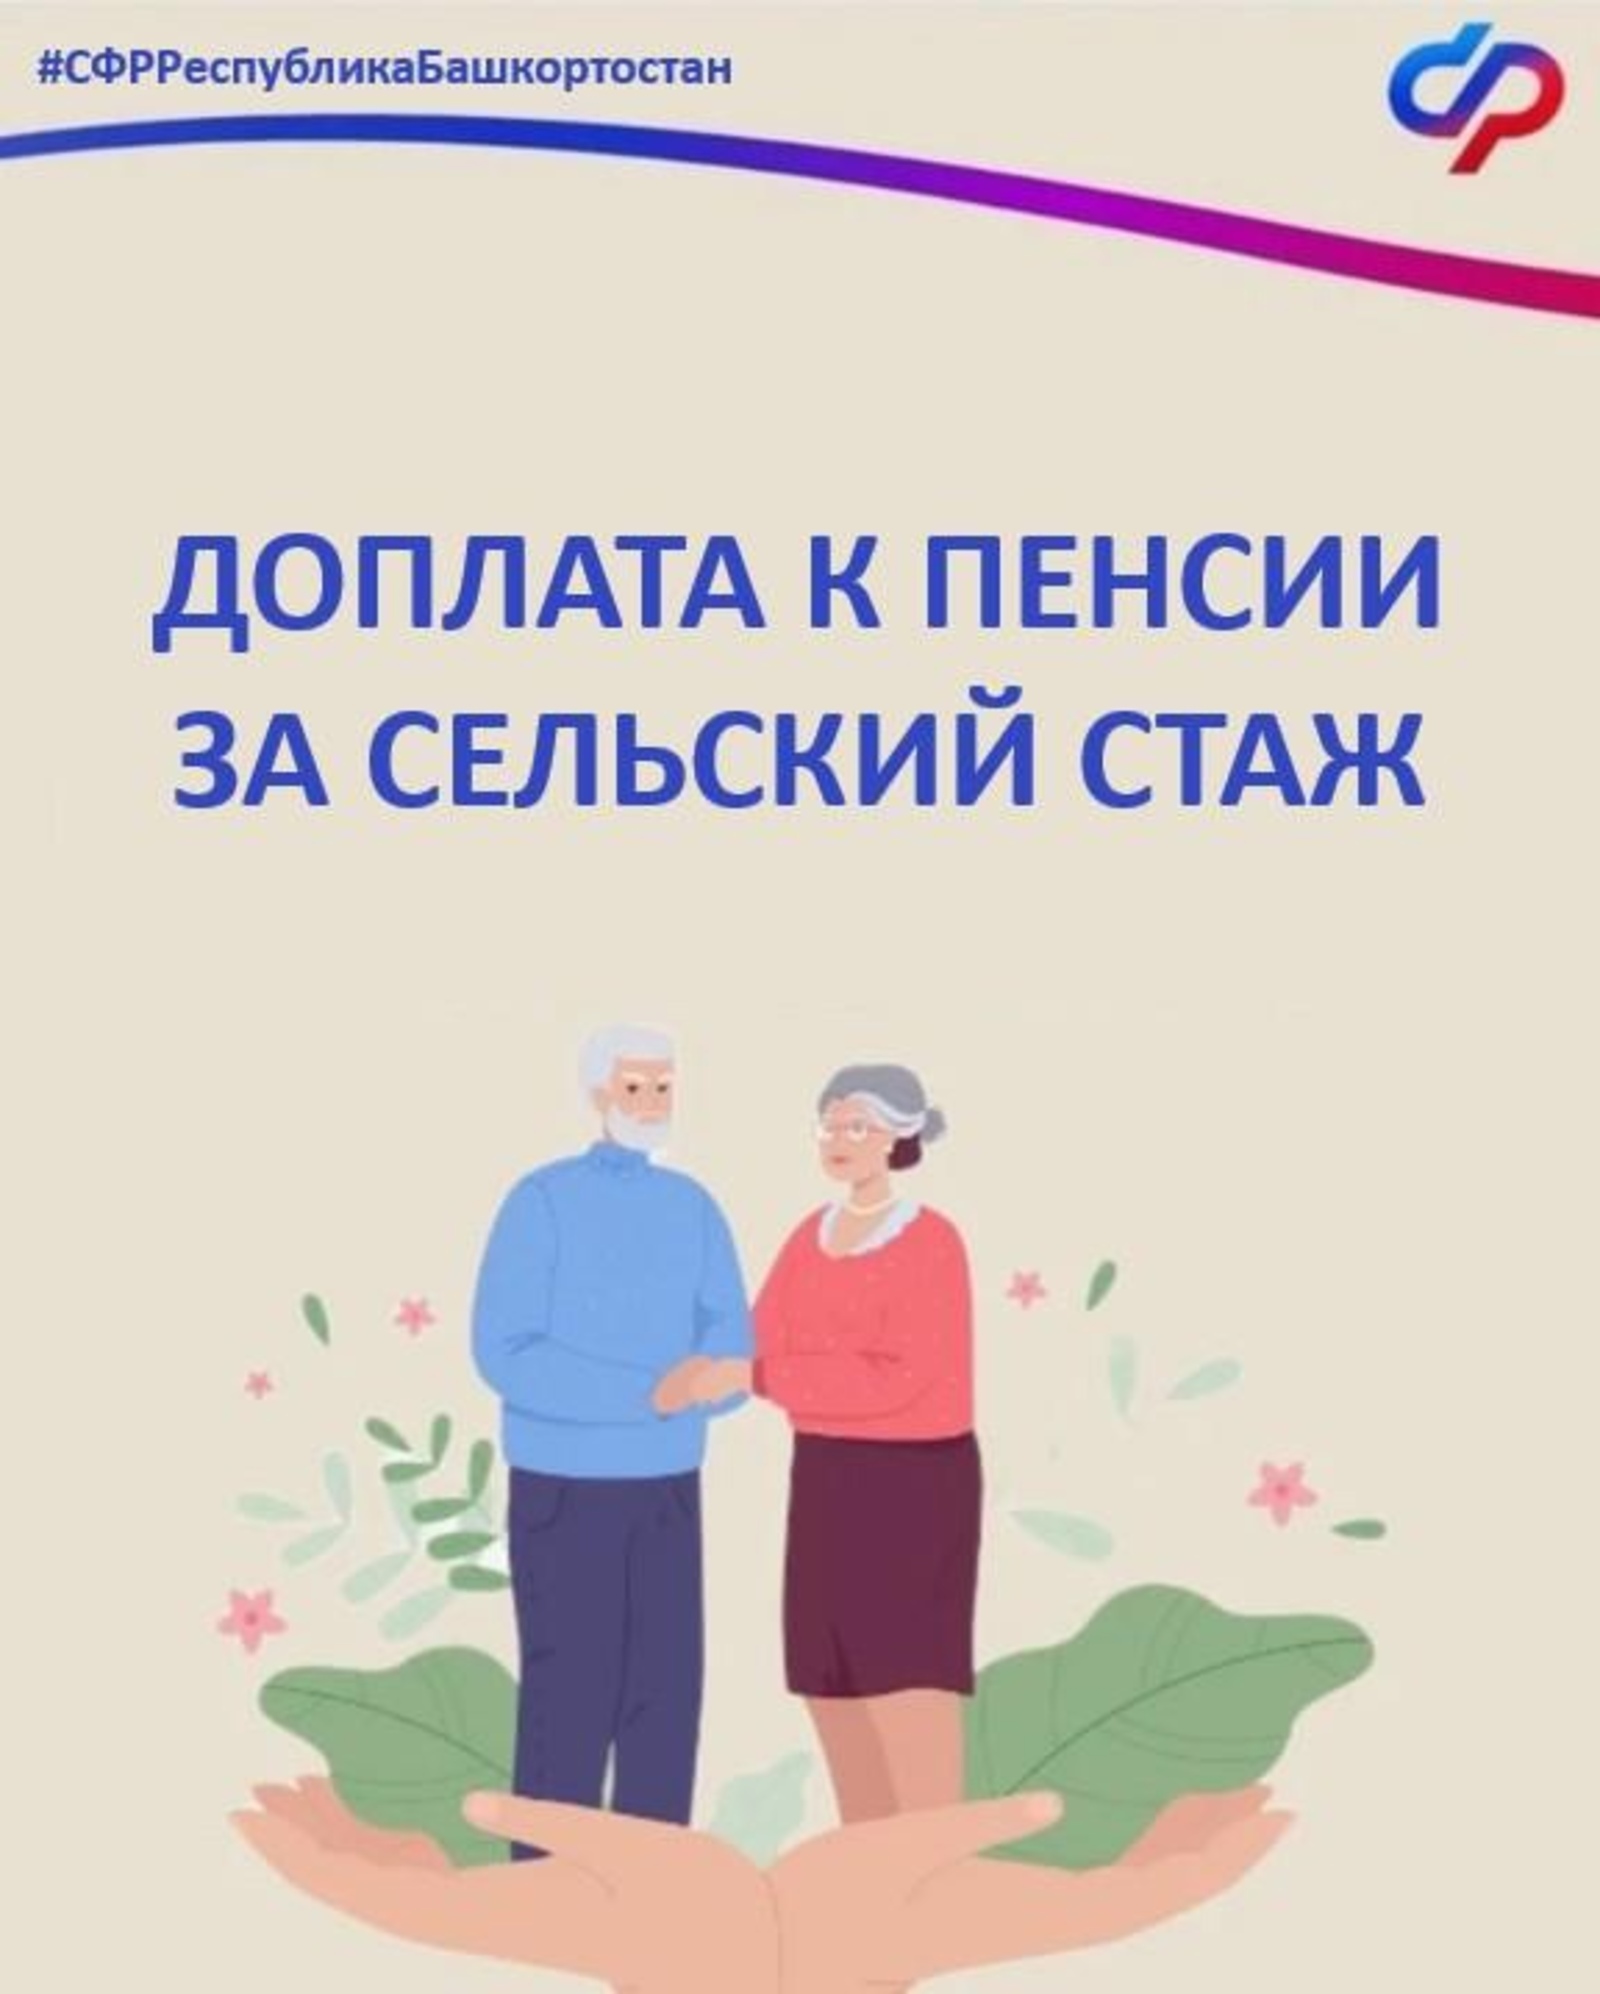 Жителям Башкирии разъяснили о доплатах к пенсии за сельский стаж